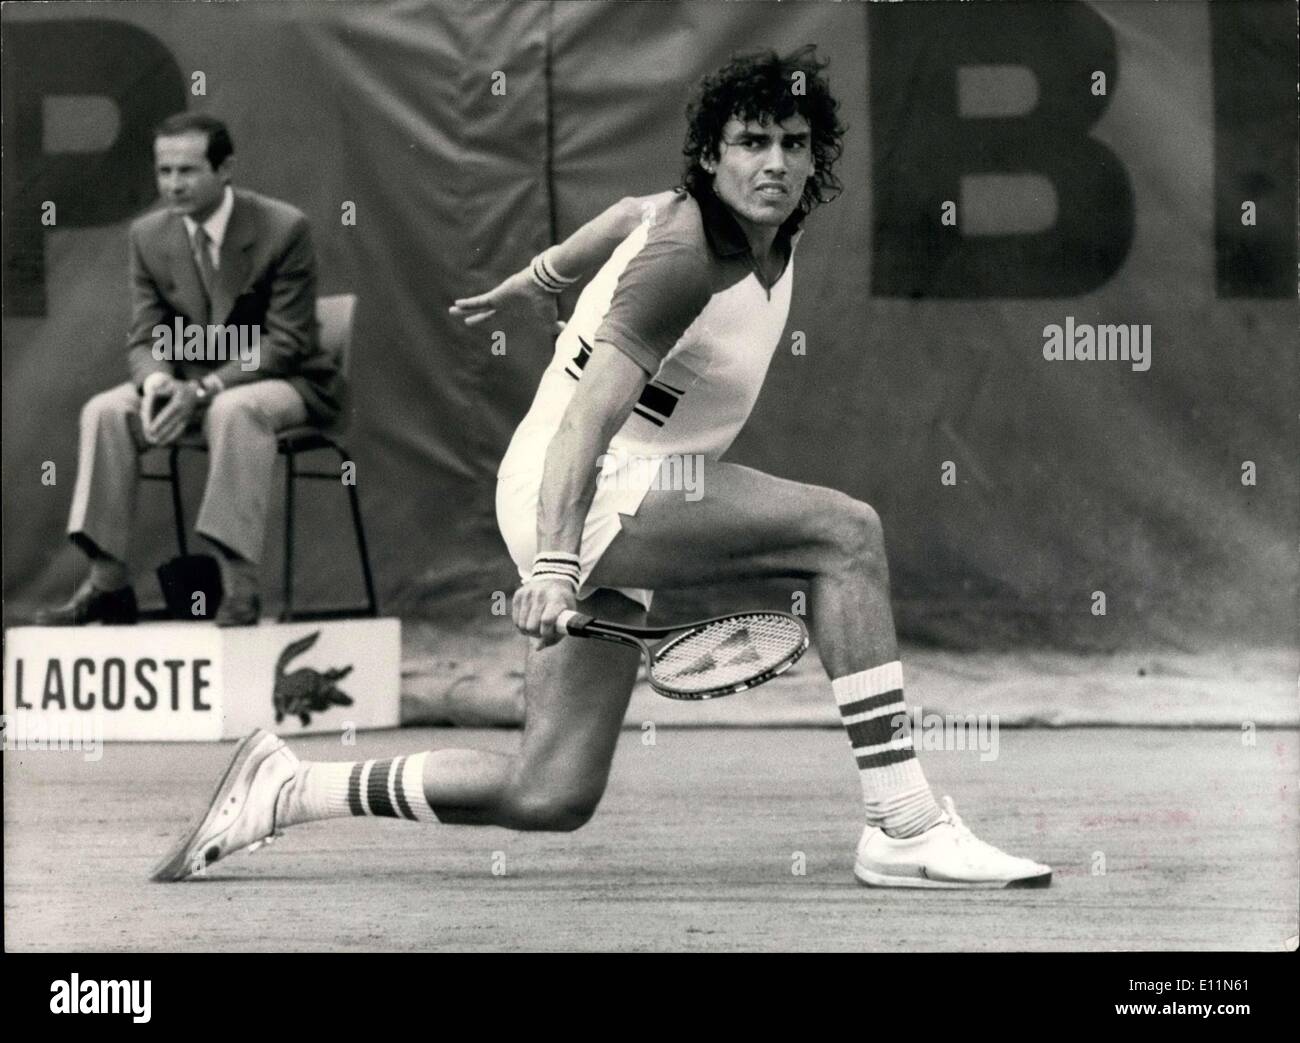 Giugno 10, 1979 - Un Tennis Campione del Mondo è nato a Roland-Garros Stadium di Victor Pecci del Paraguay, che dopo aver brillantemente trionfato Vilas ed oltre Connors, assunse Bjorn Borg dalla Svezia in finale al francese si apre. Ecco una foto di Victor Pecci in azione. Foto Stock